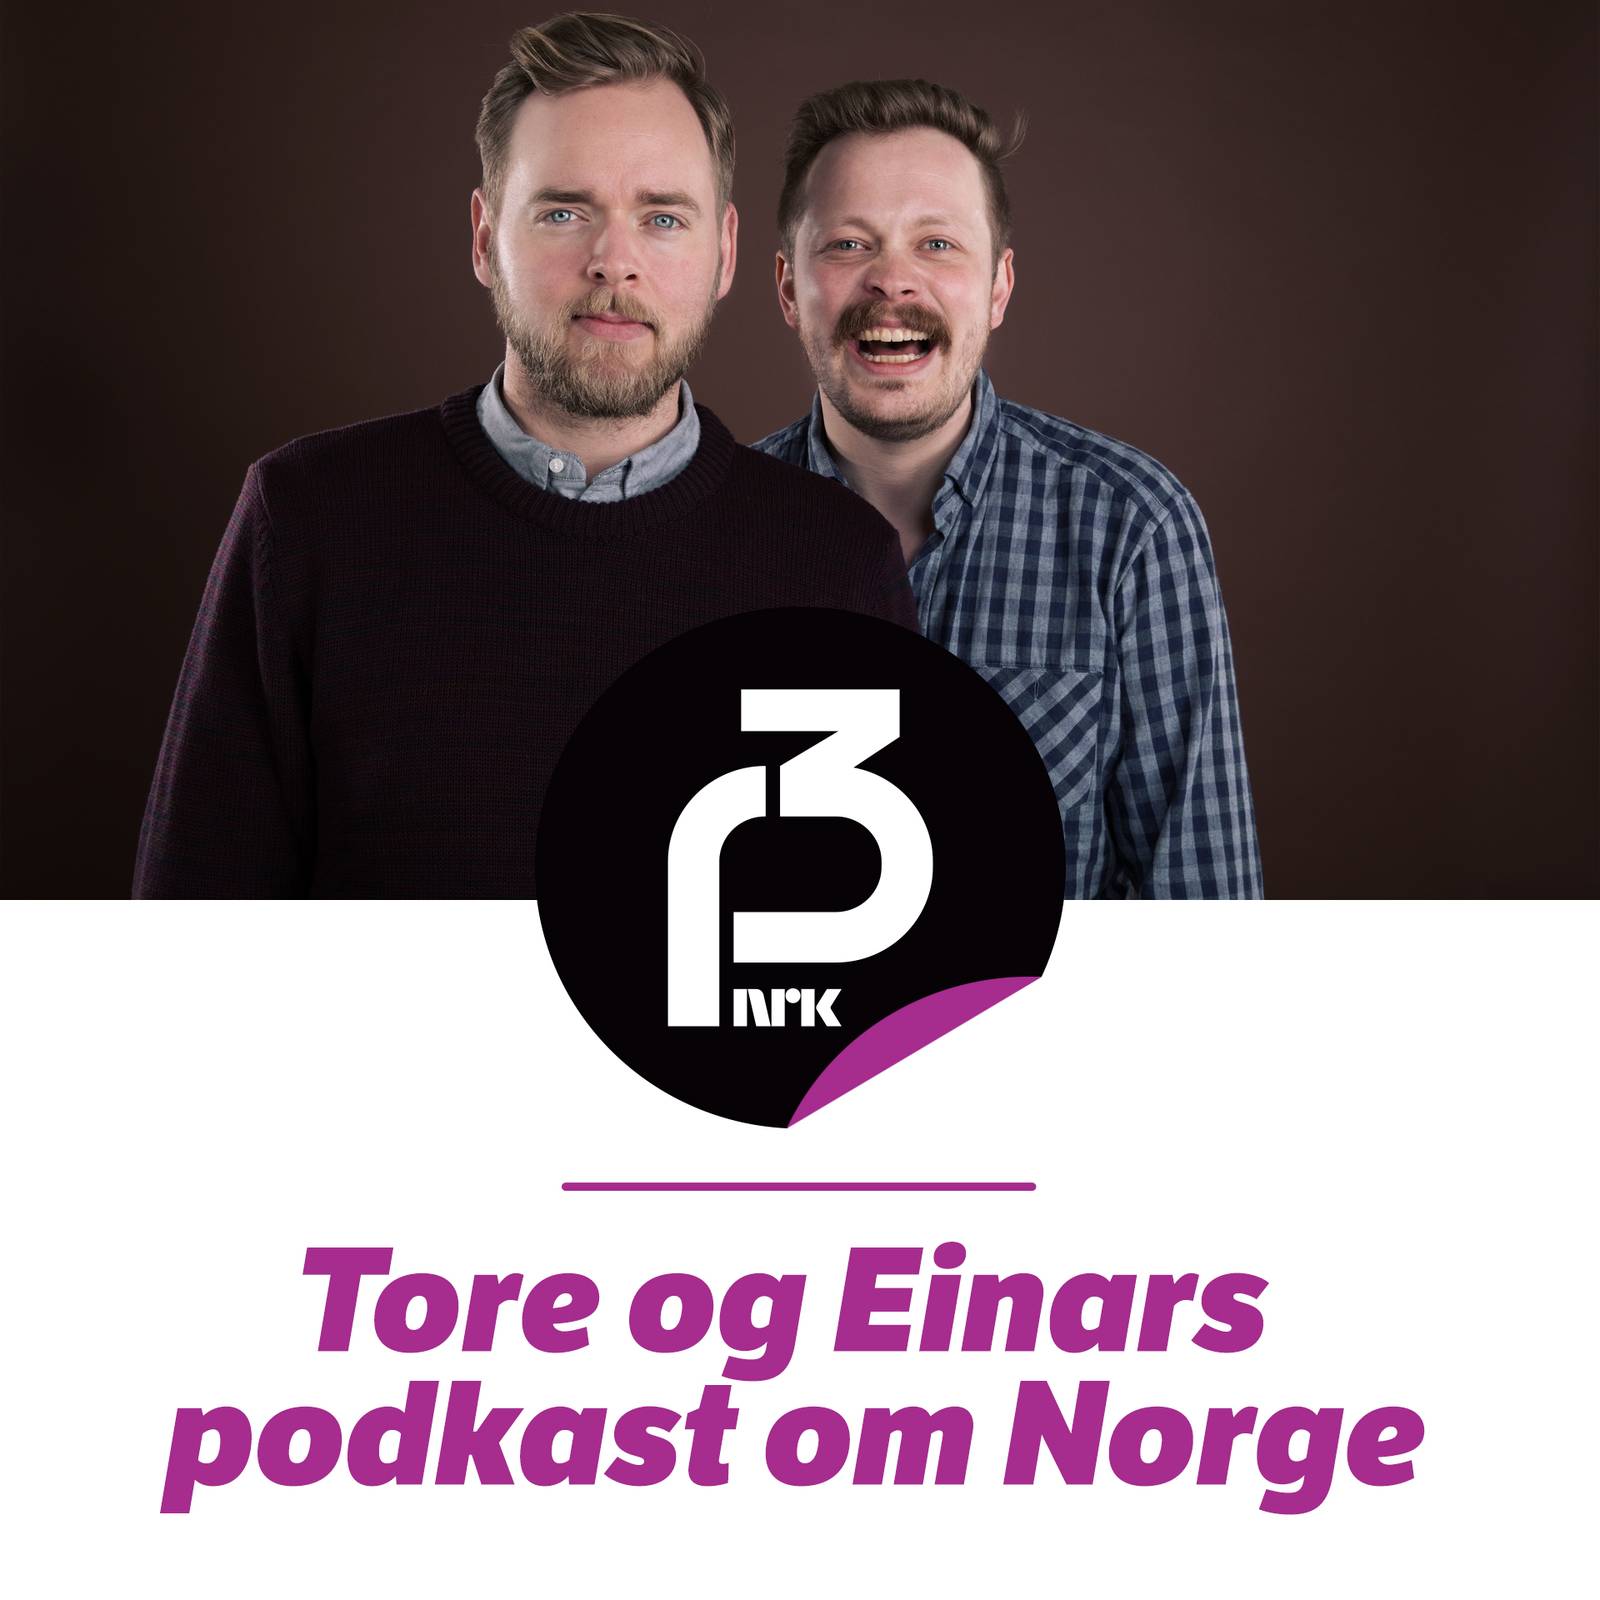 Tore og Einars podkast om Norge